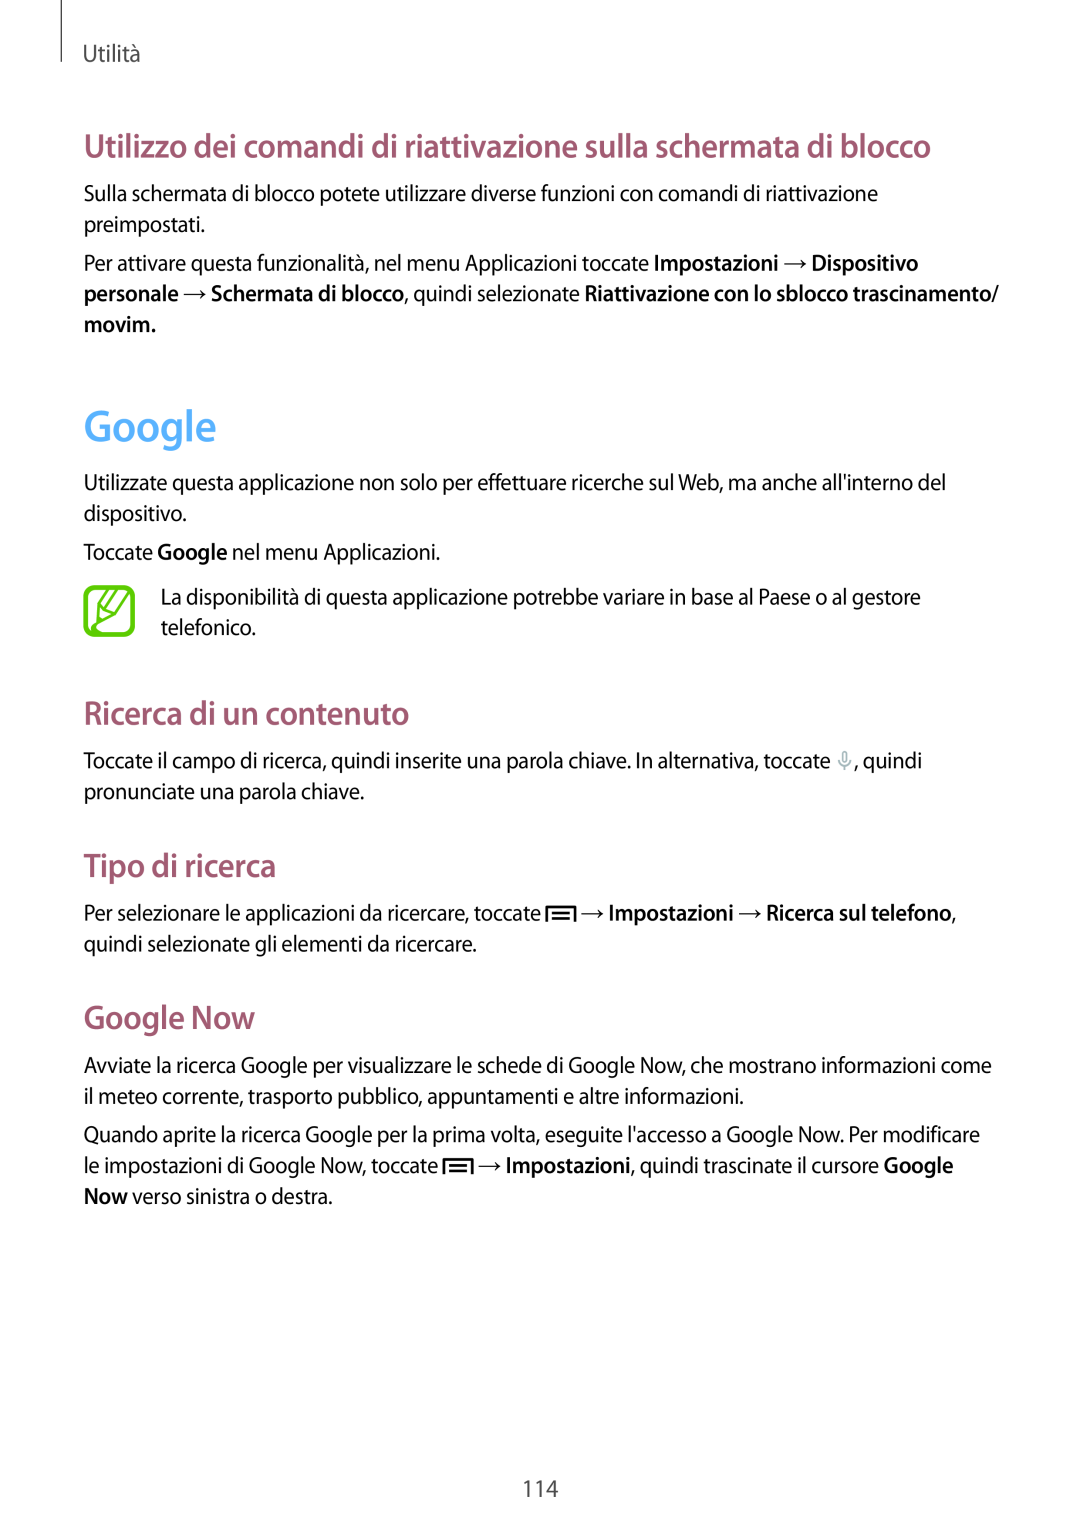 Samsung GT-N7100TADXSG Google, Utilizzo dei comandi di riattivazione sulla schermata di blocco, Ricerca di un contenuto 